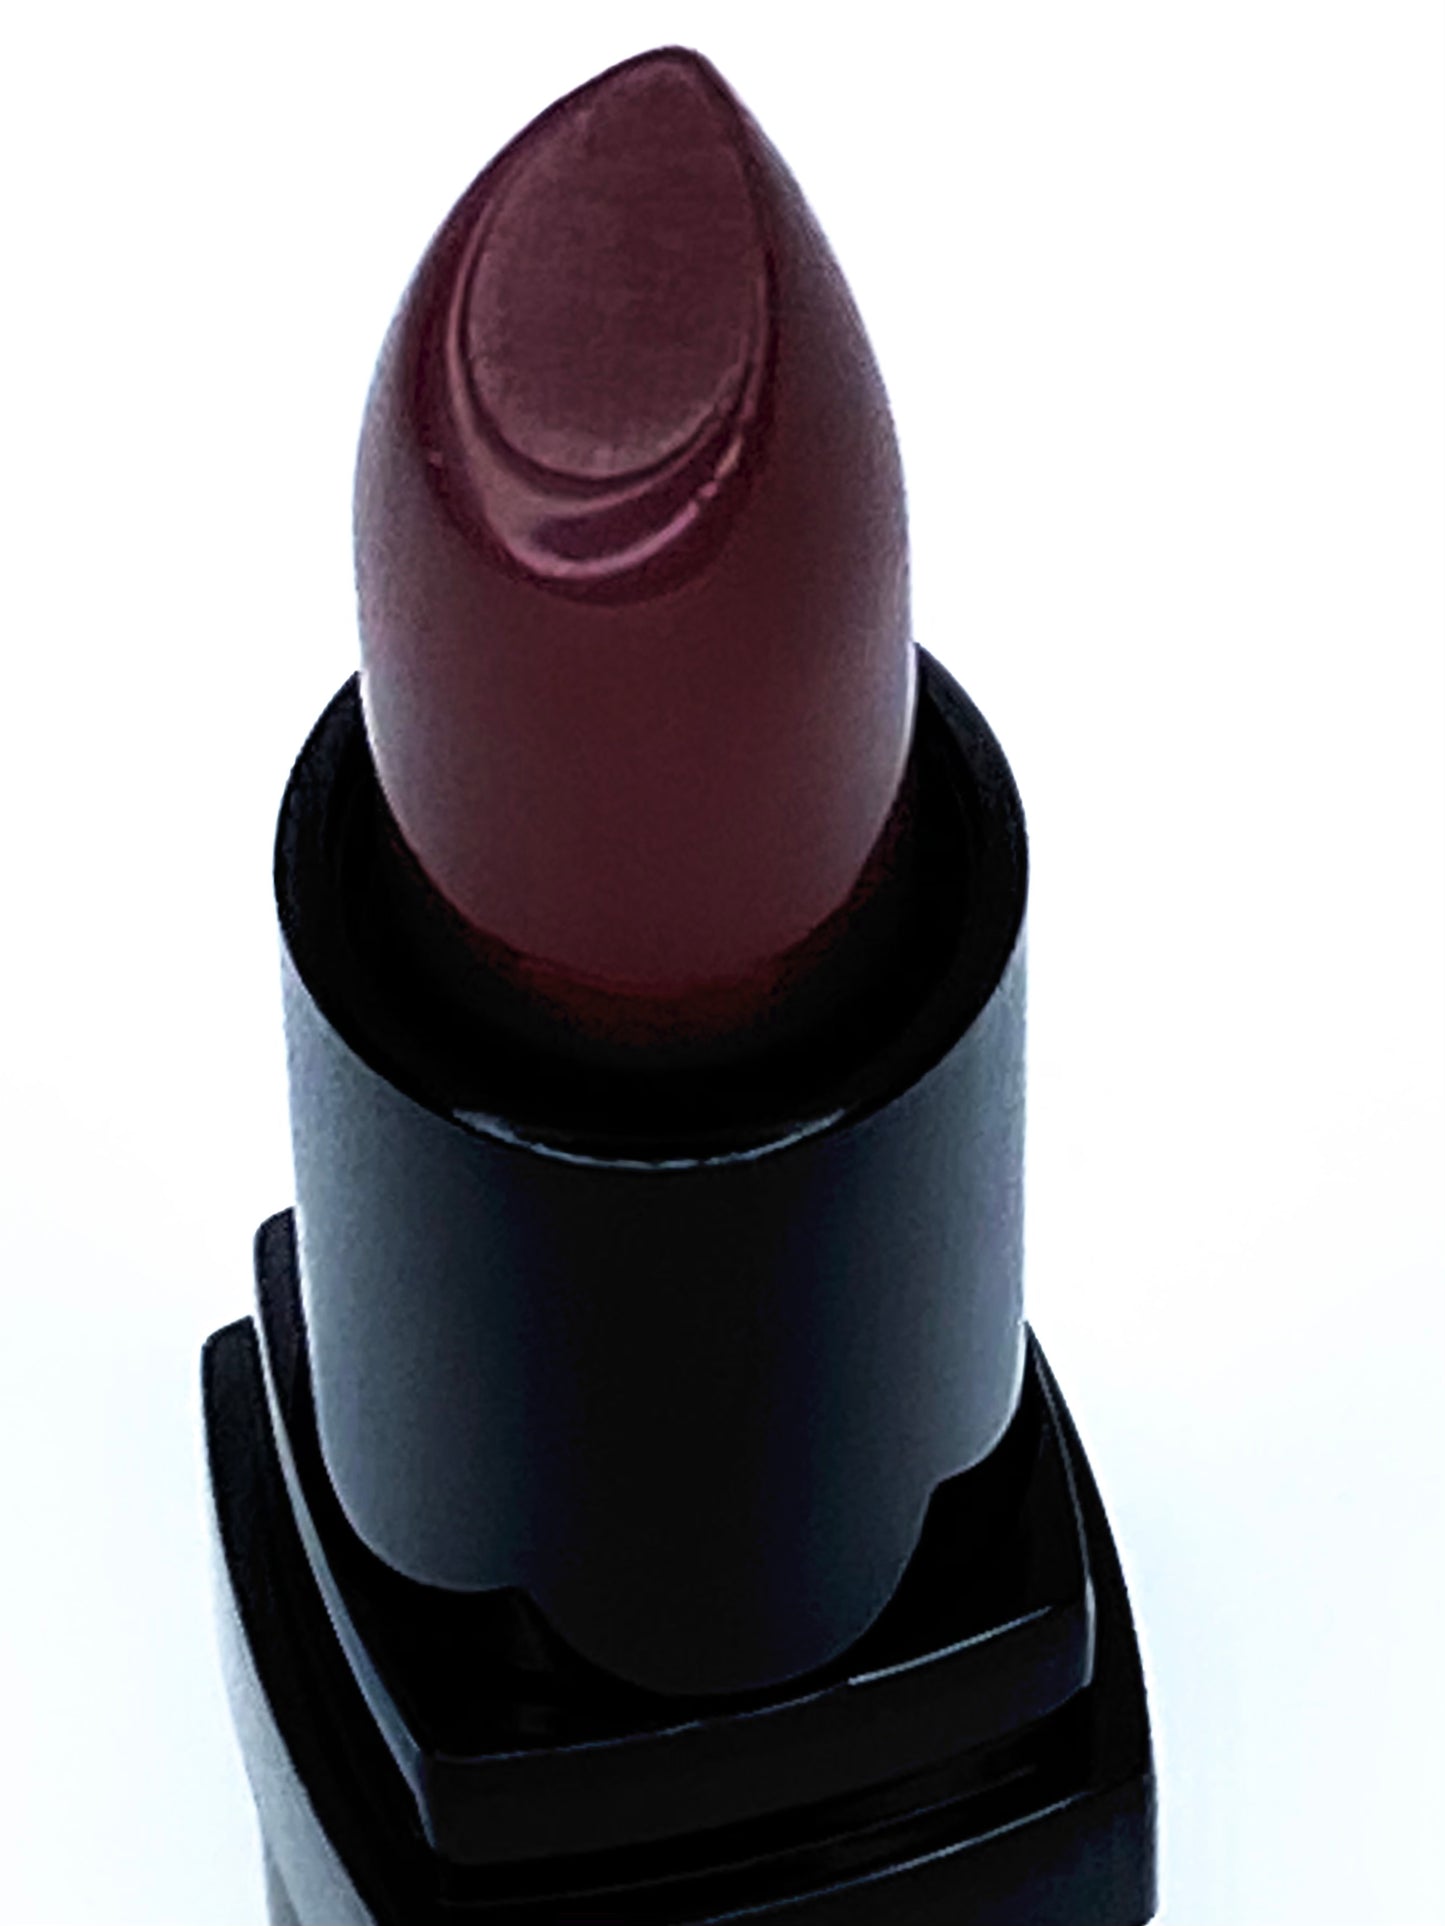 “BORDEAUX” Creme Lipstick #680